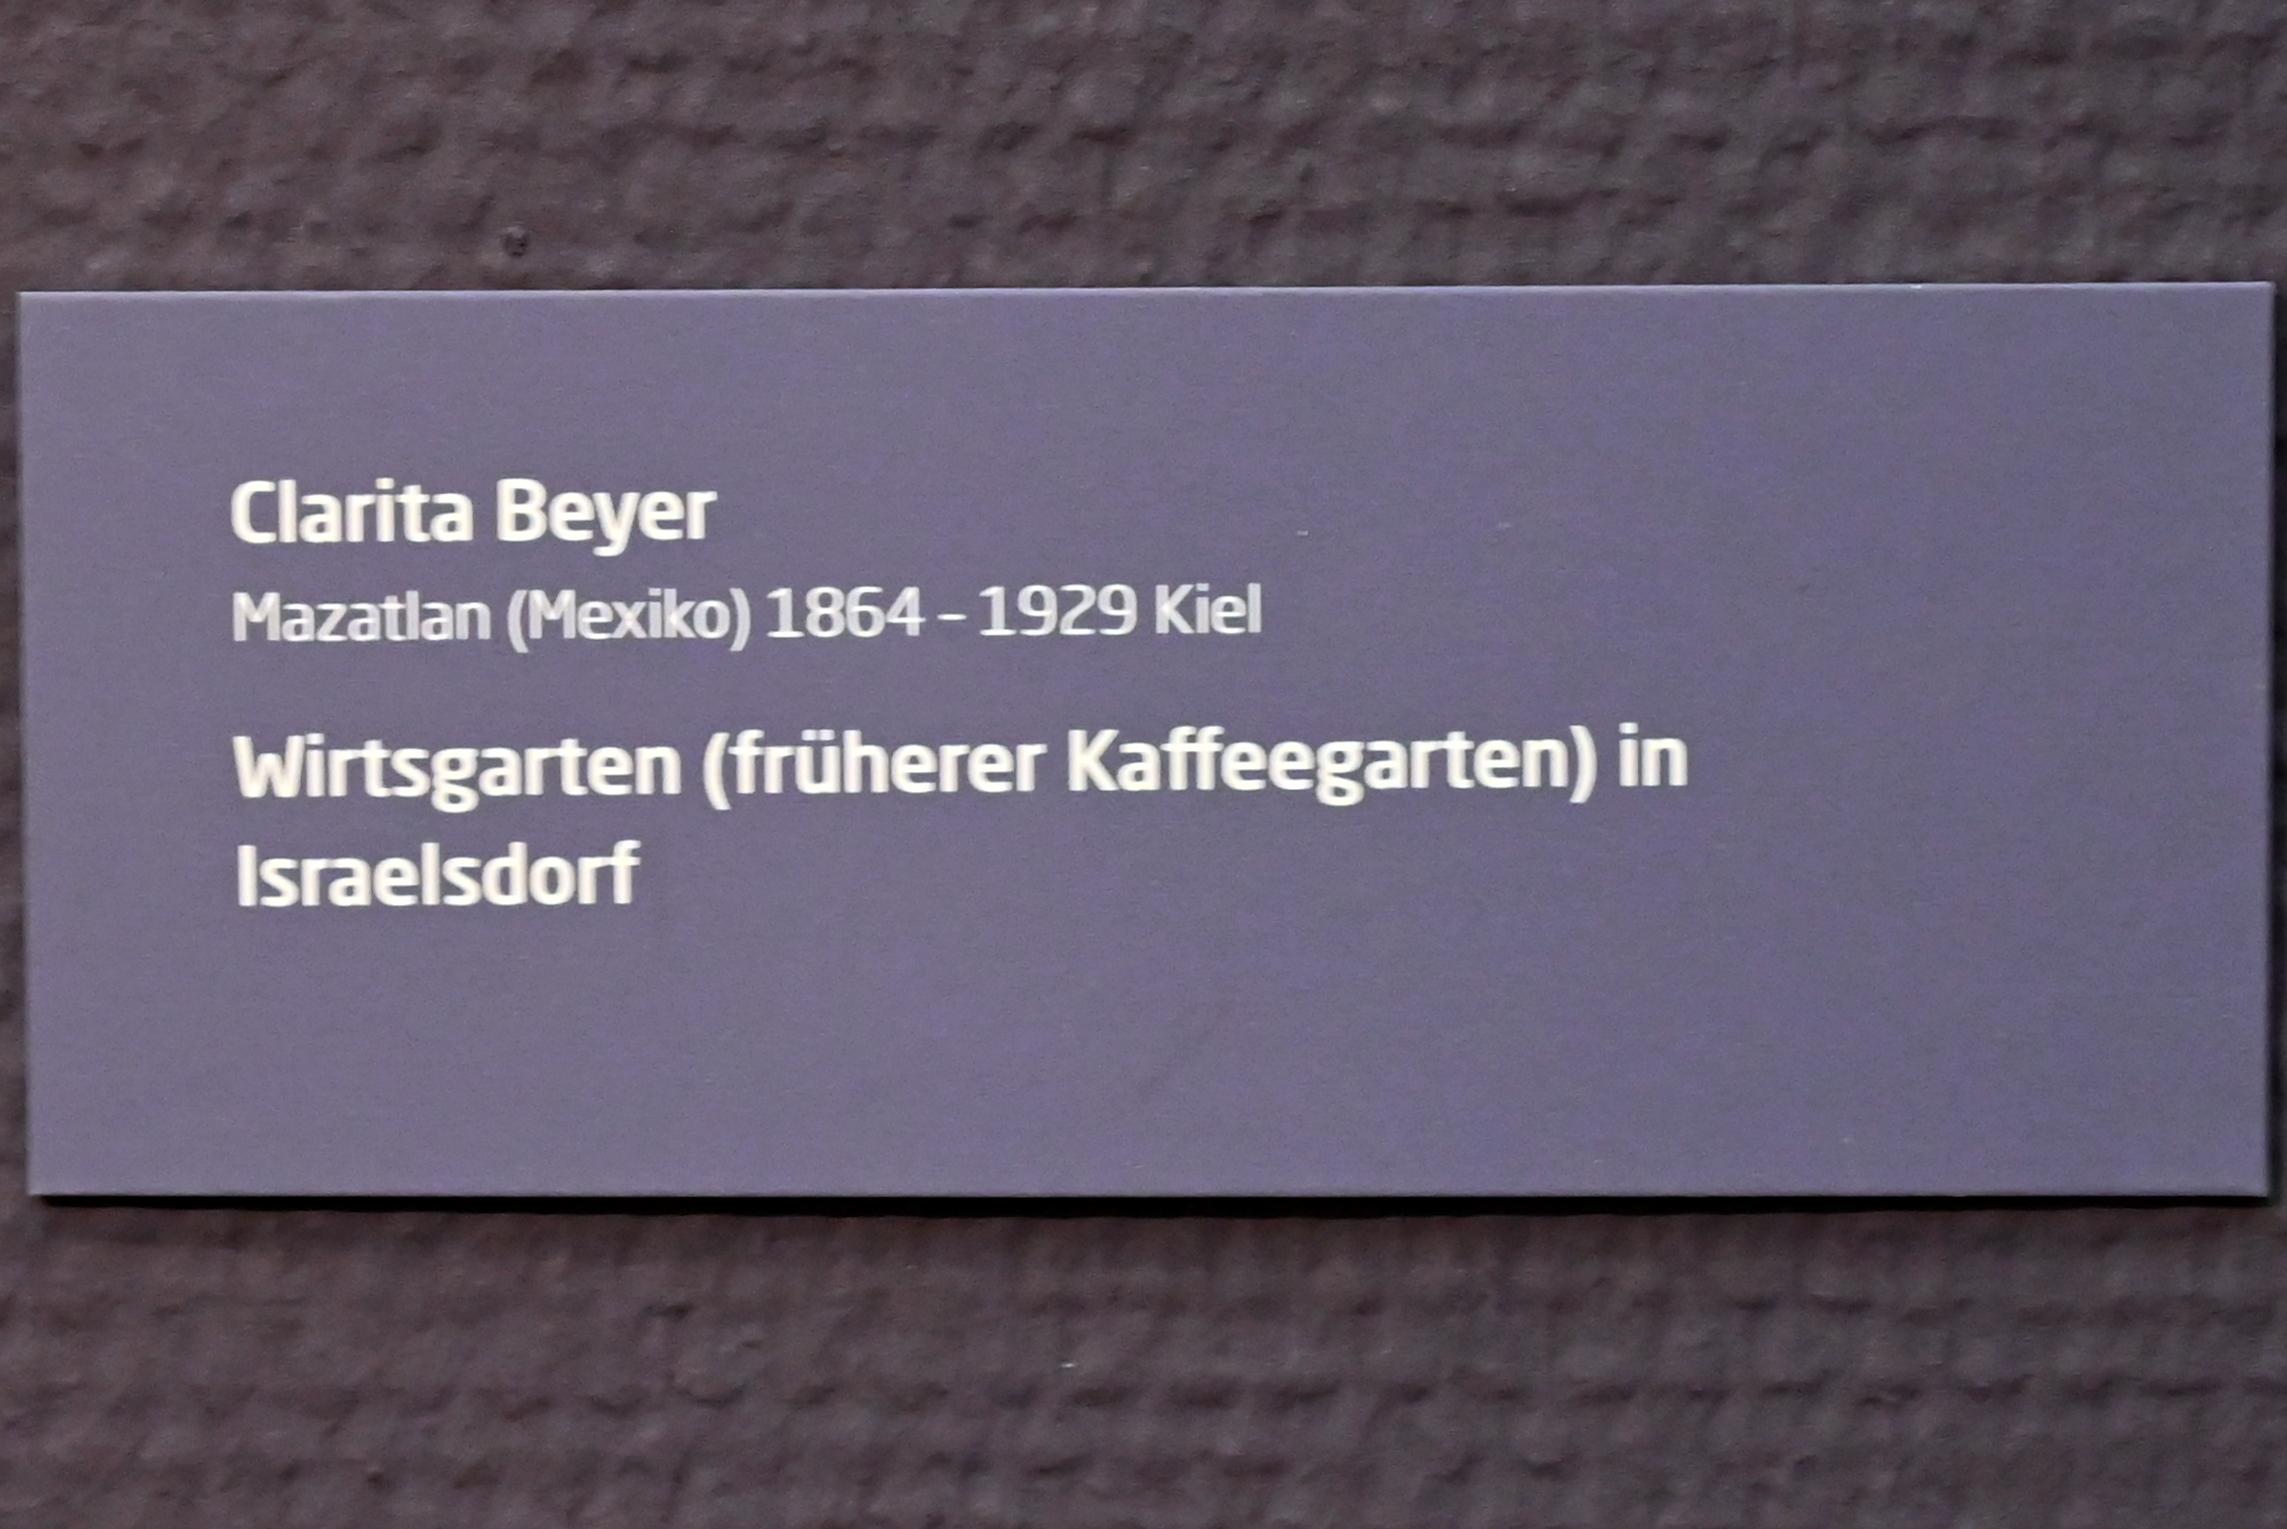 Clarita Beyer (Undatiert), Wirtsgarten (früherer Kaffeegarten) in Israelsdorf, Lübeck, Museum Behnhaus Drägerhaus, Erdgeschoß Haupthaus Saal 2, Undatiert, Bild 2/2